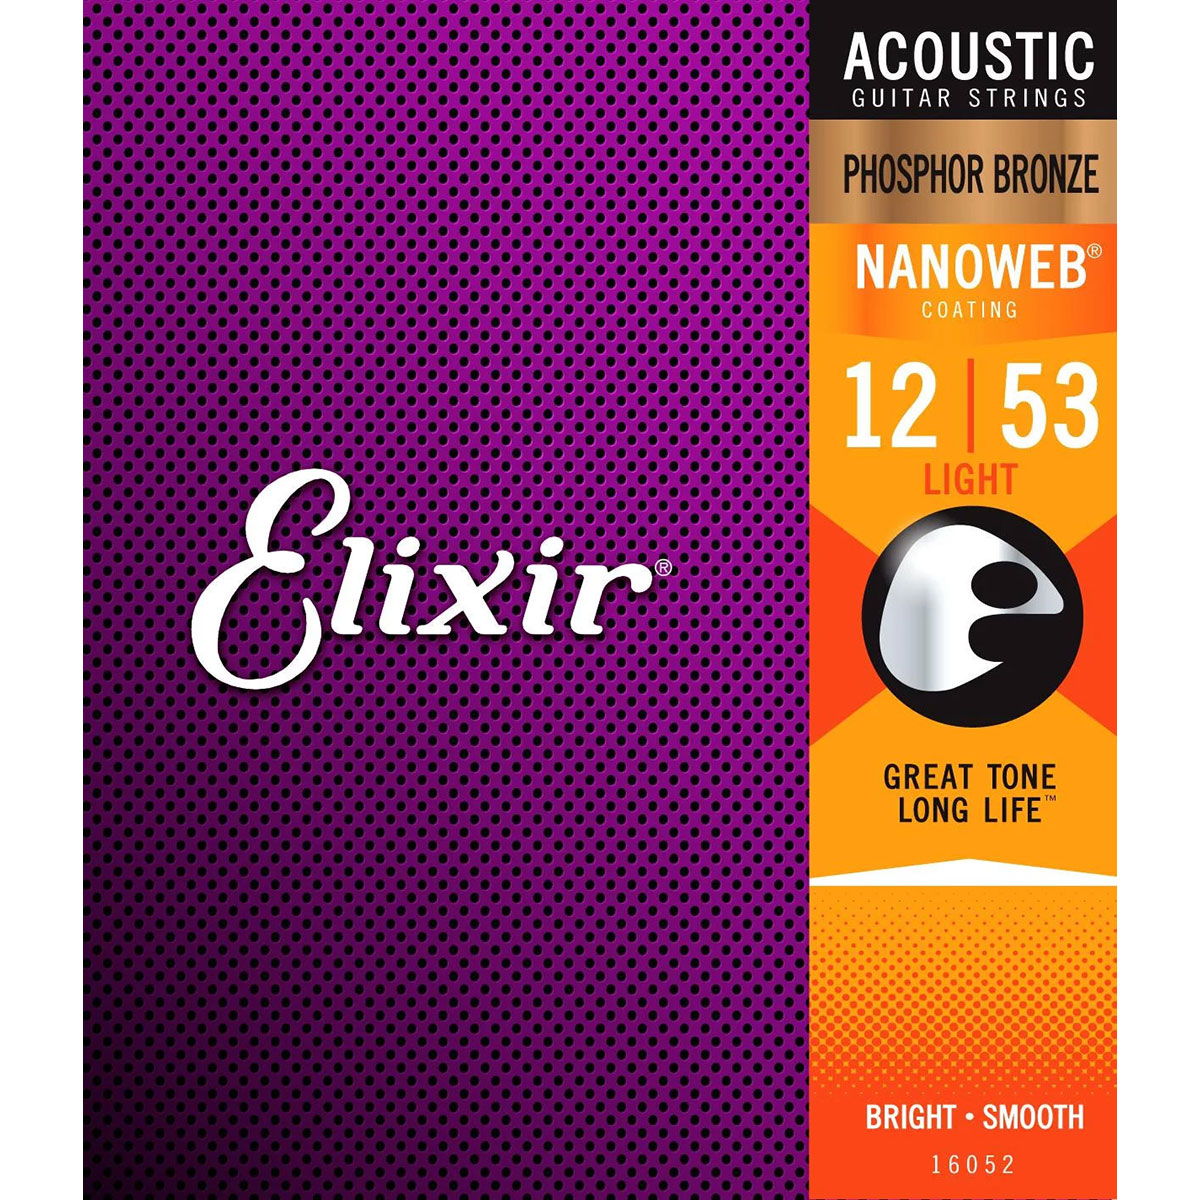 Elixir NANOWEB フォスファーブロンズ 12-53 ライト #16052 【 エリクサー アコースティックギター弦 】  島村楽器オンラインストア